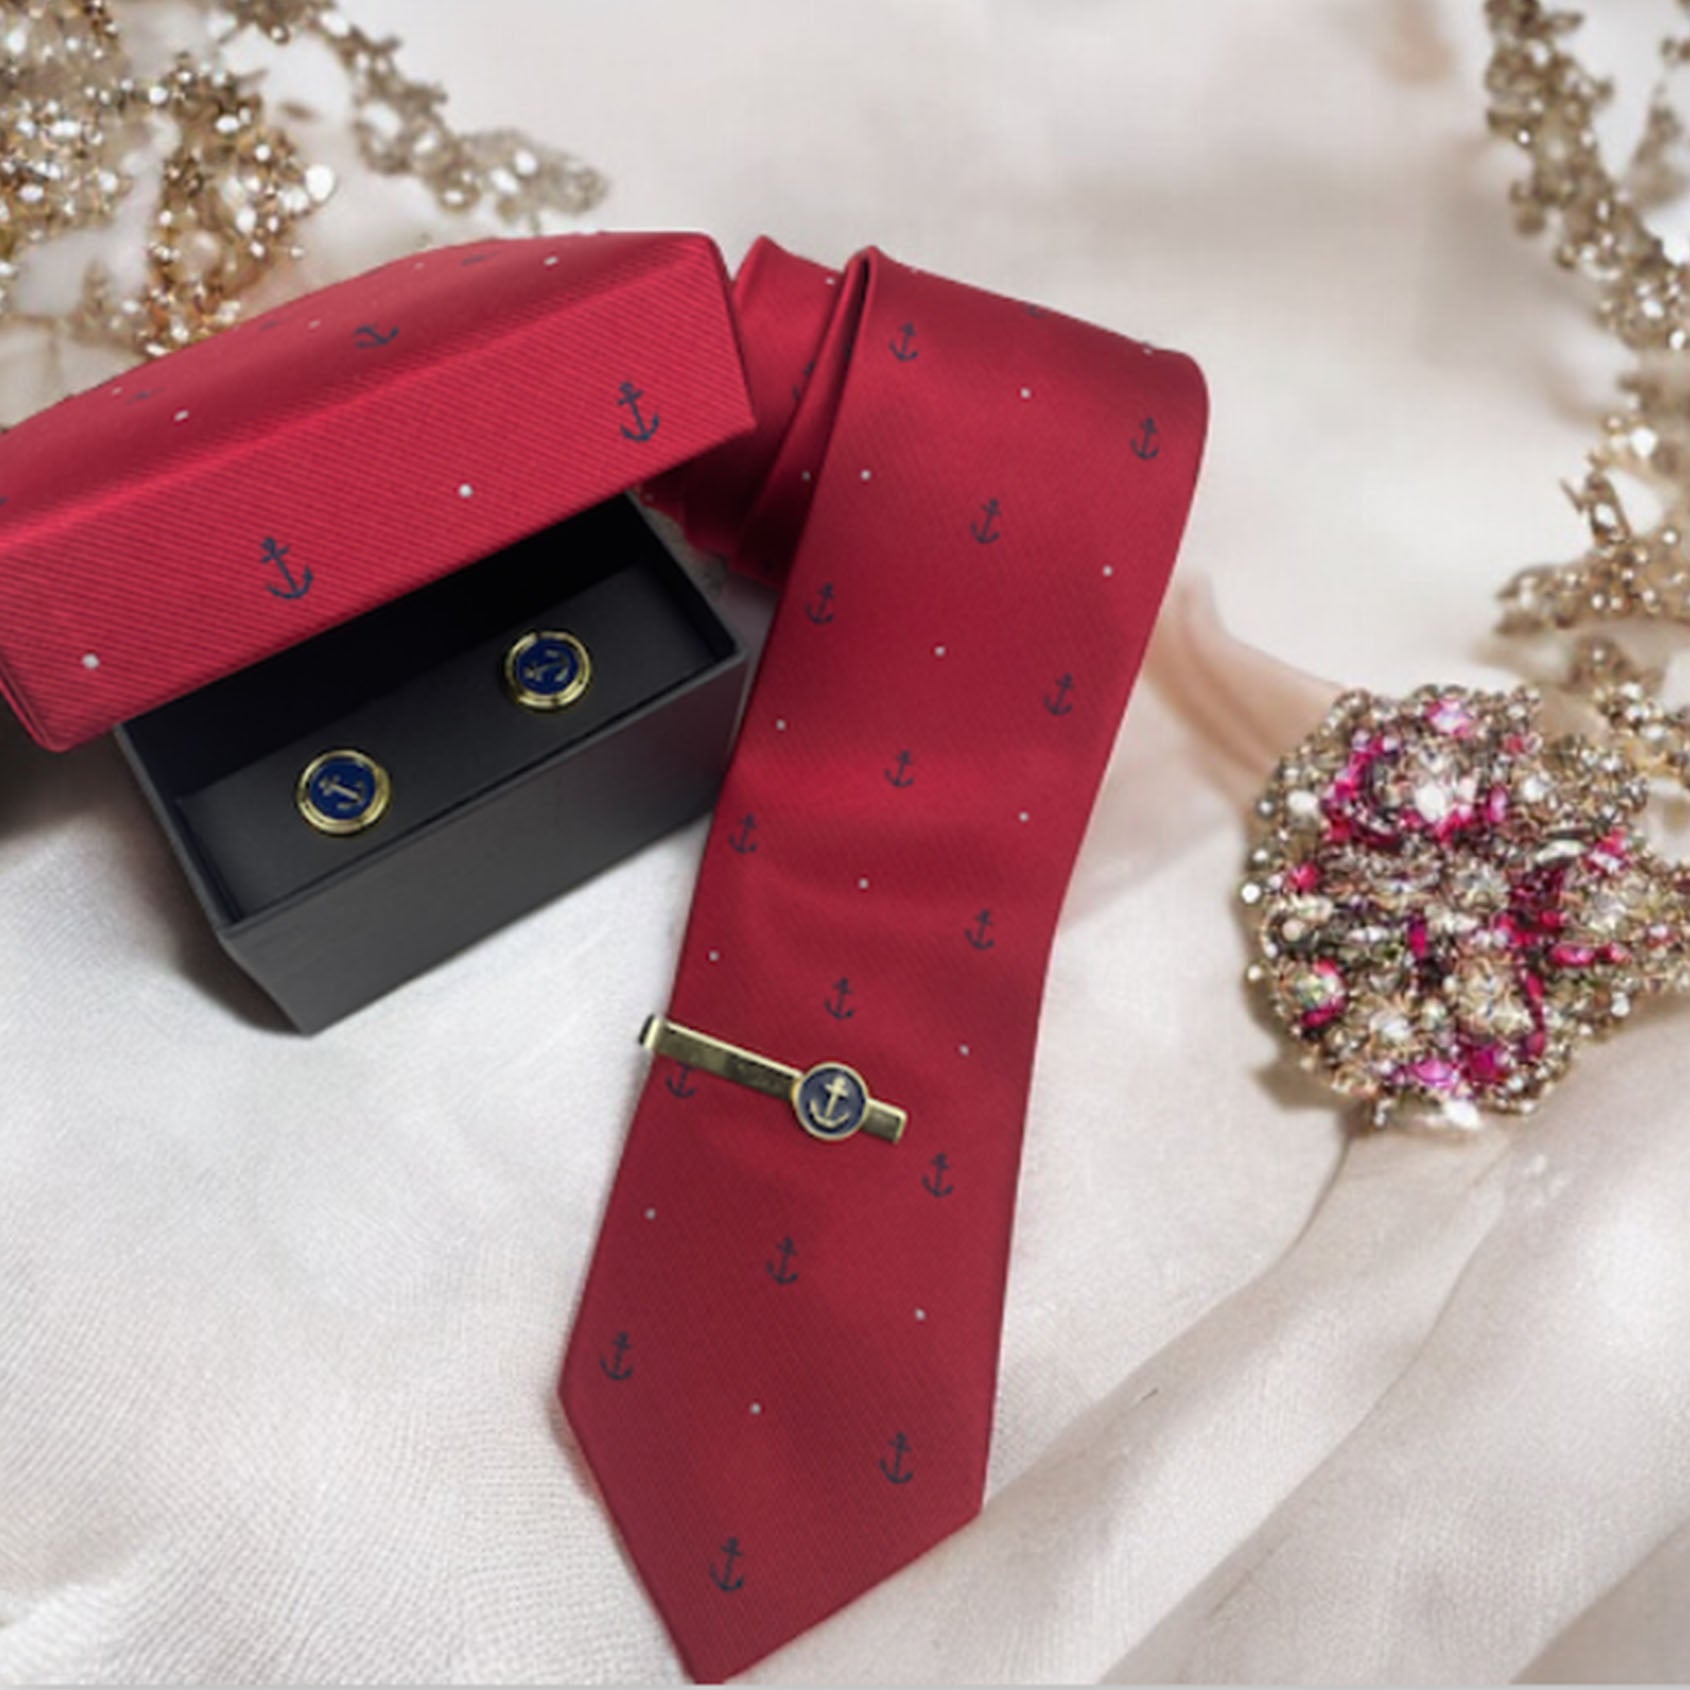 Rotes Geschenkset mit Krawattennadel, Krawatte und Manschettenknöpfen